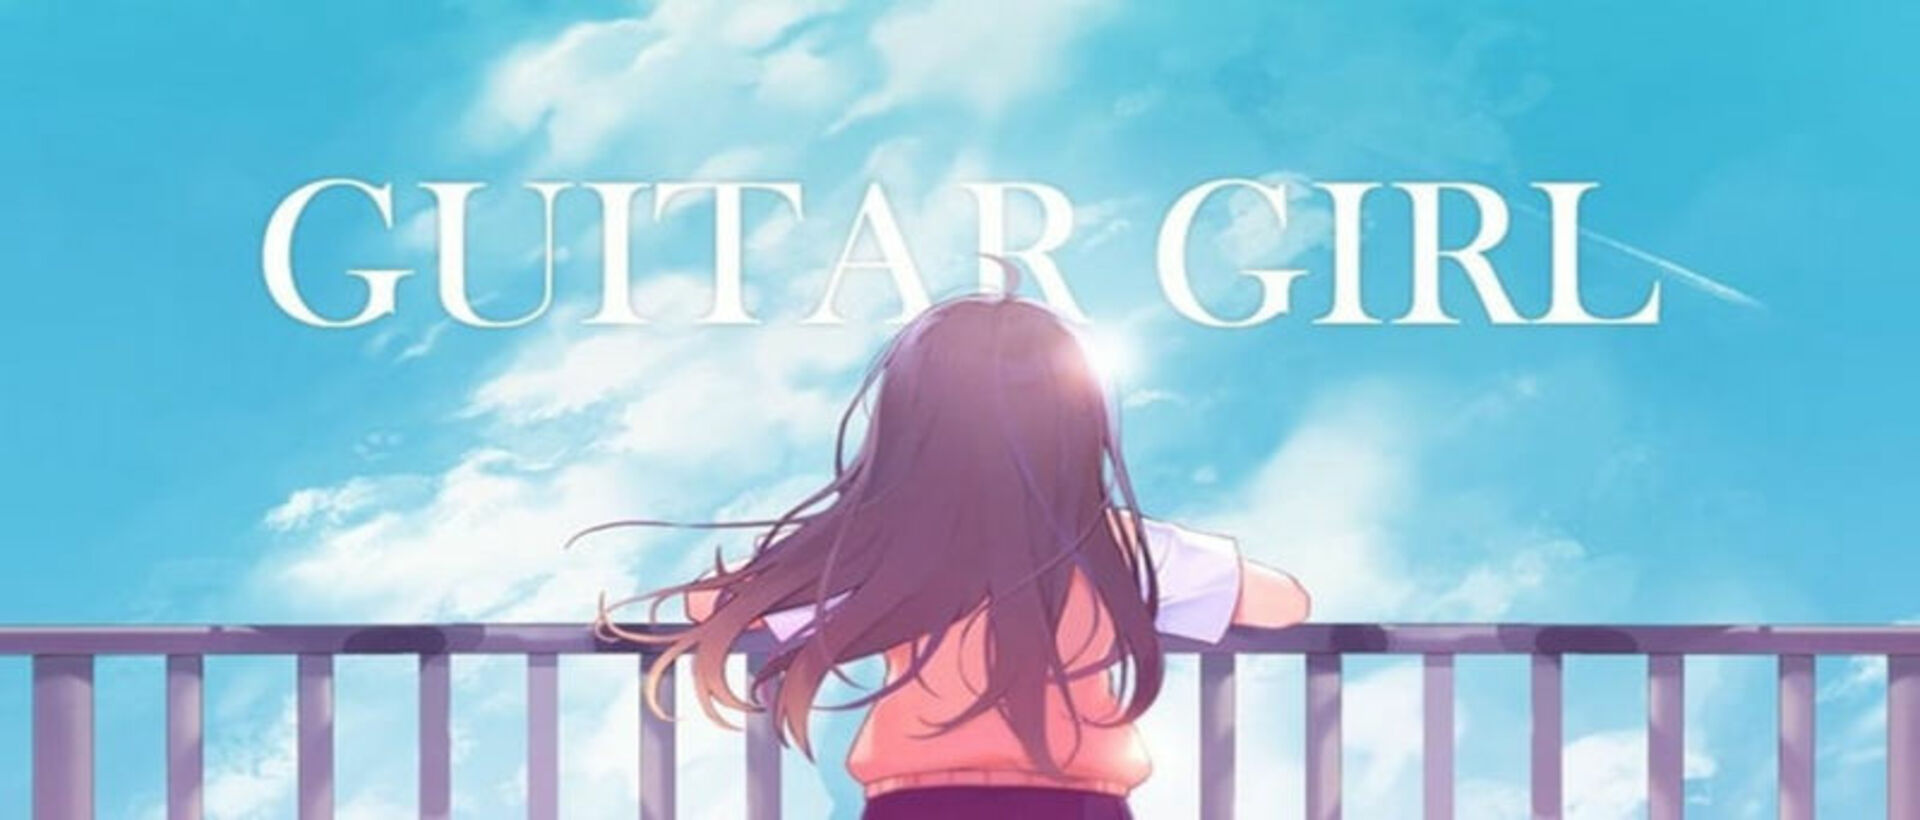 Chơi Guitar Girl : Game Âm nhạc Thư giãn trên máy tính/PC cùng giả lập NoxPlayer